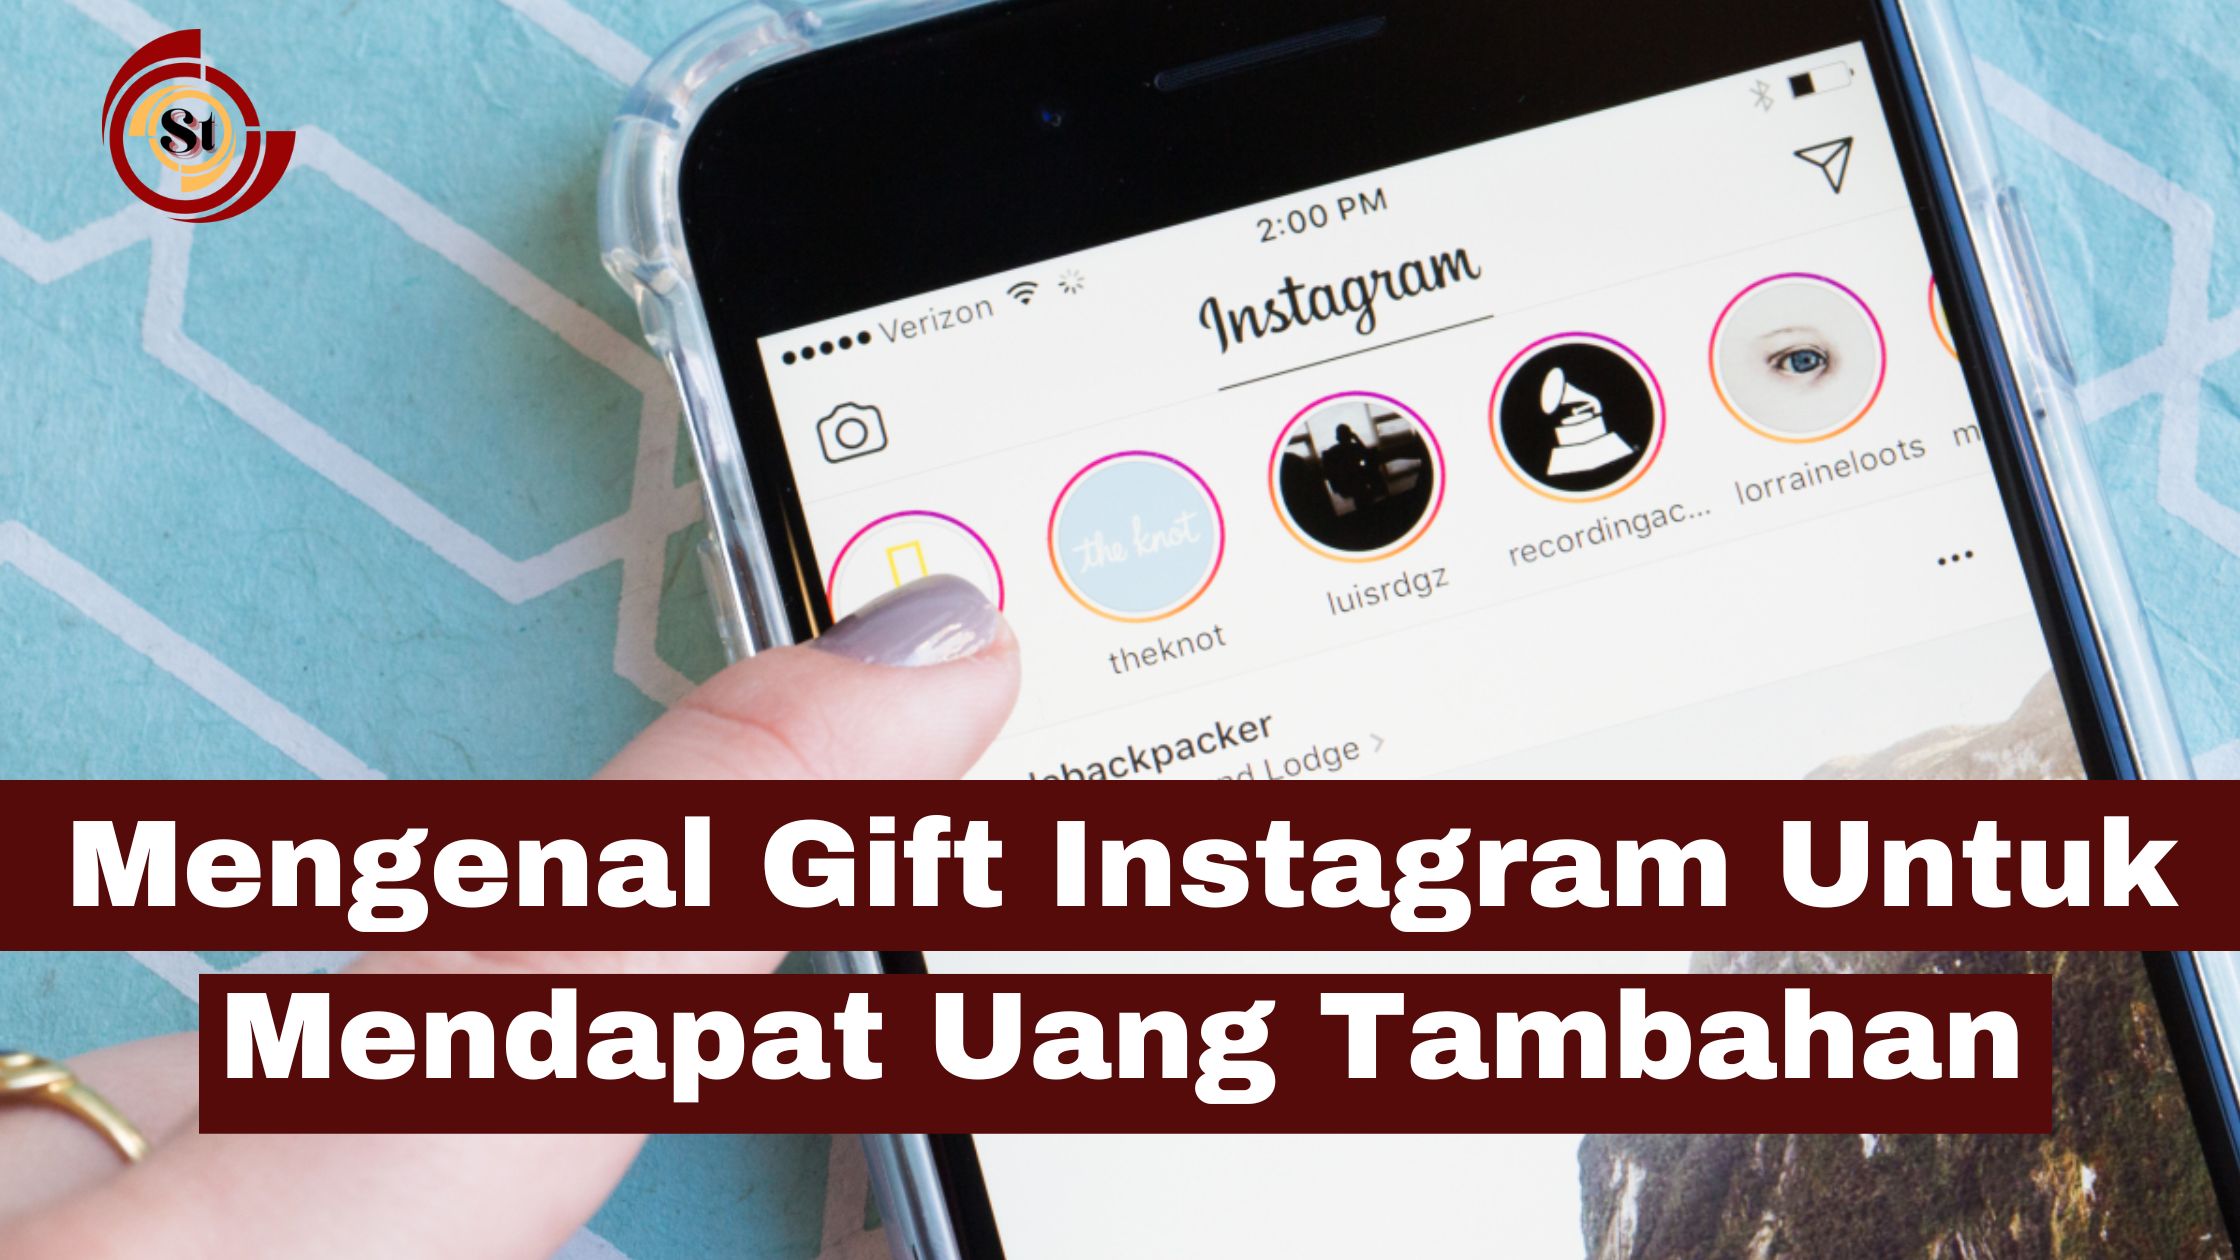 Mengenal Gift Instagram Untuk Mendapat Uang Tambahan